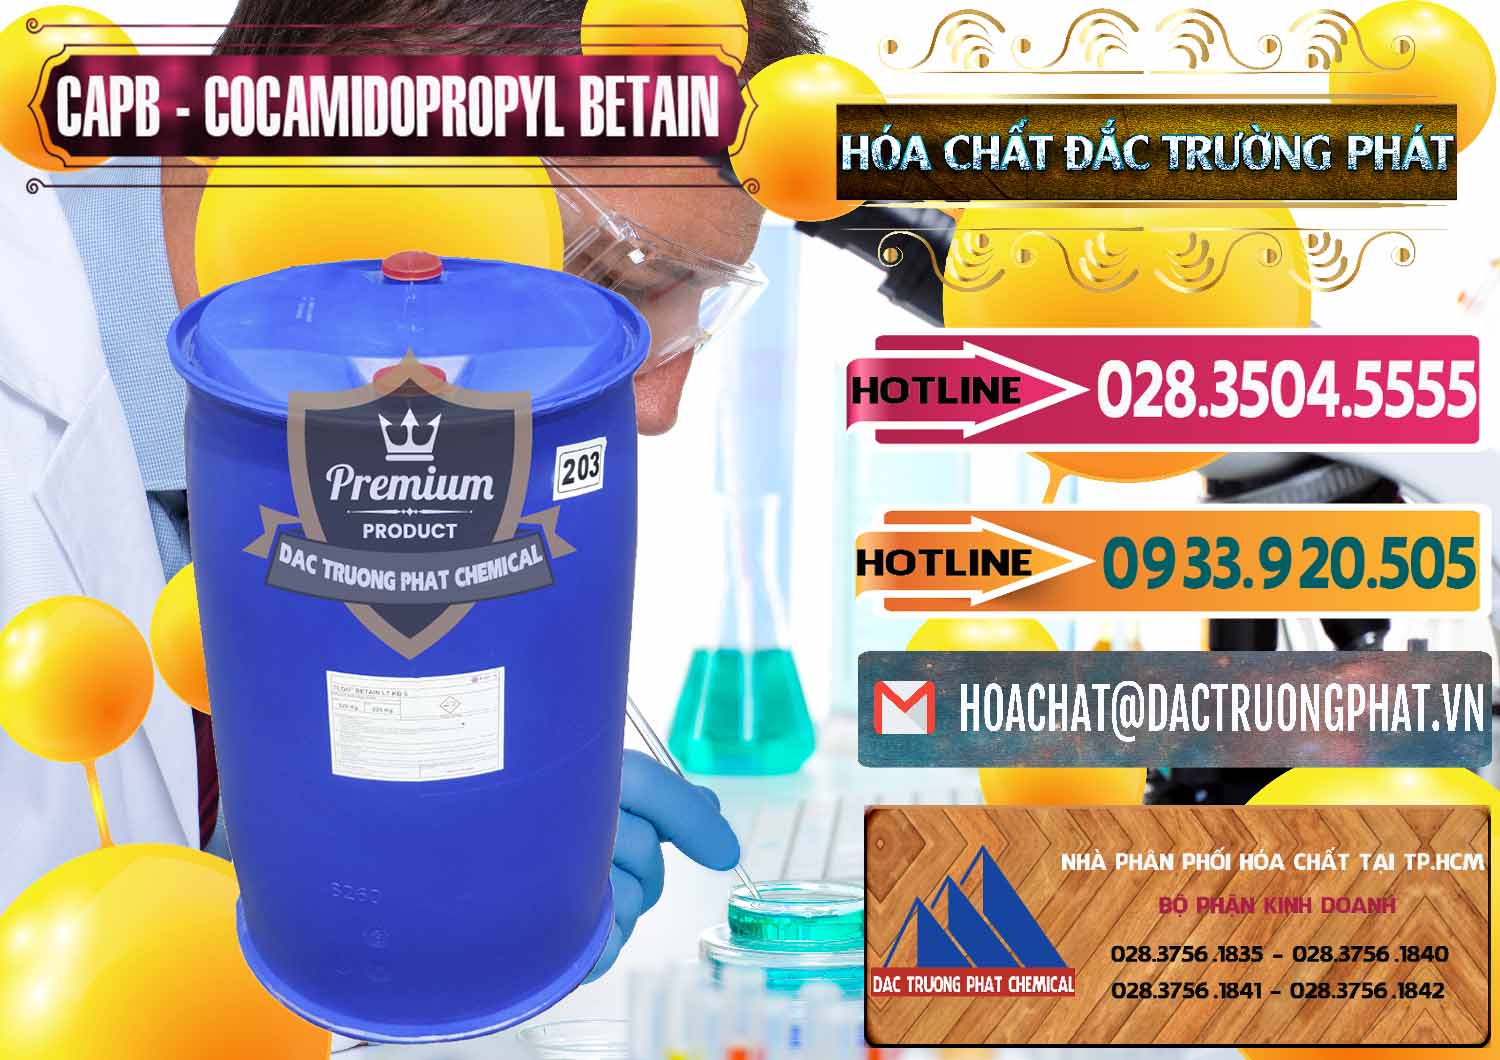 Nơi chuyên bán và cung cấp Cocamidopropyl Betaine - CAPB Tego Indonesia - 0327 - Cty chuyên bán & cung cấp hóa chất tại TP.HCM - dactruongphat.vn